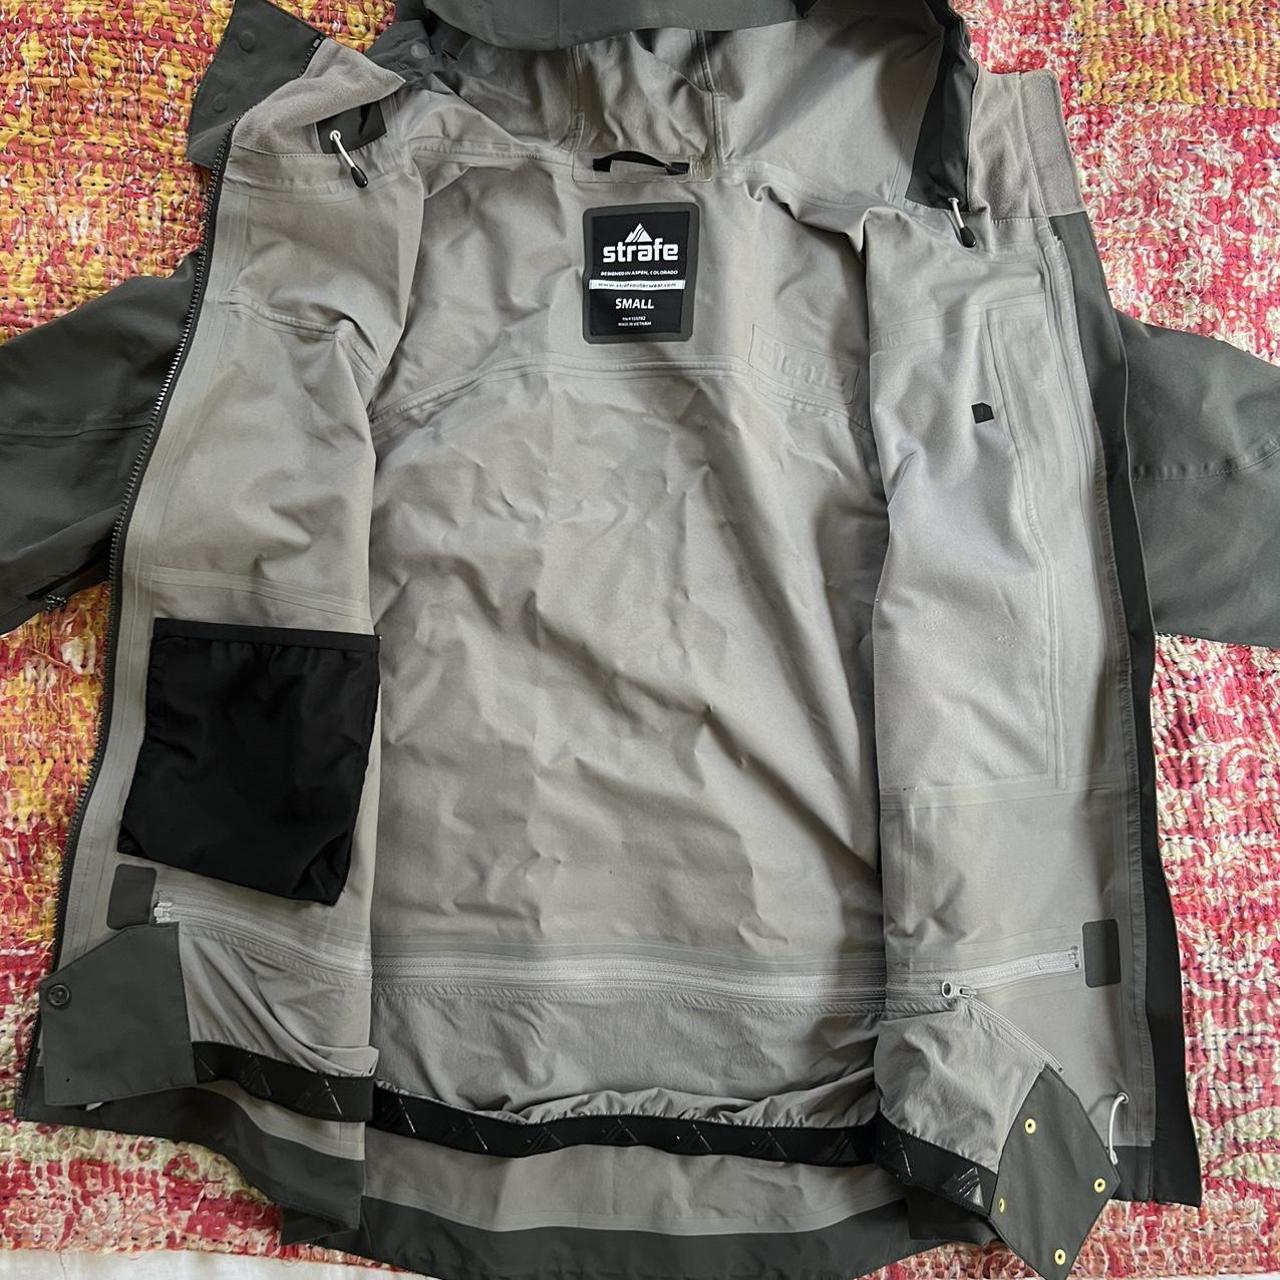 STRAFE shell jacket, charcoal/green color Size... - Depop